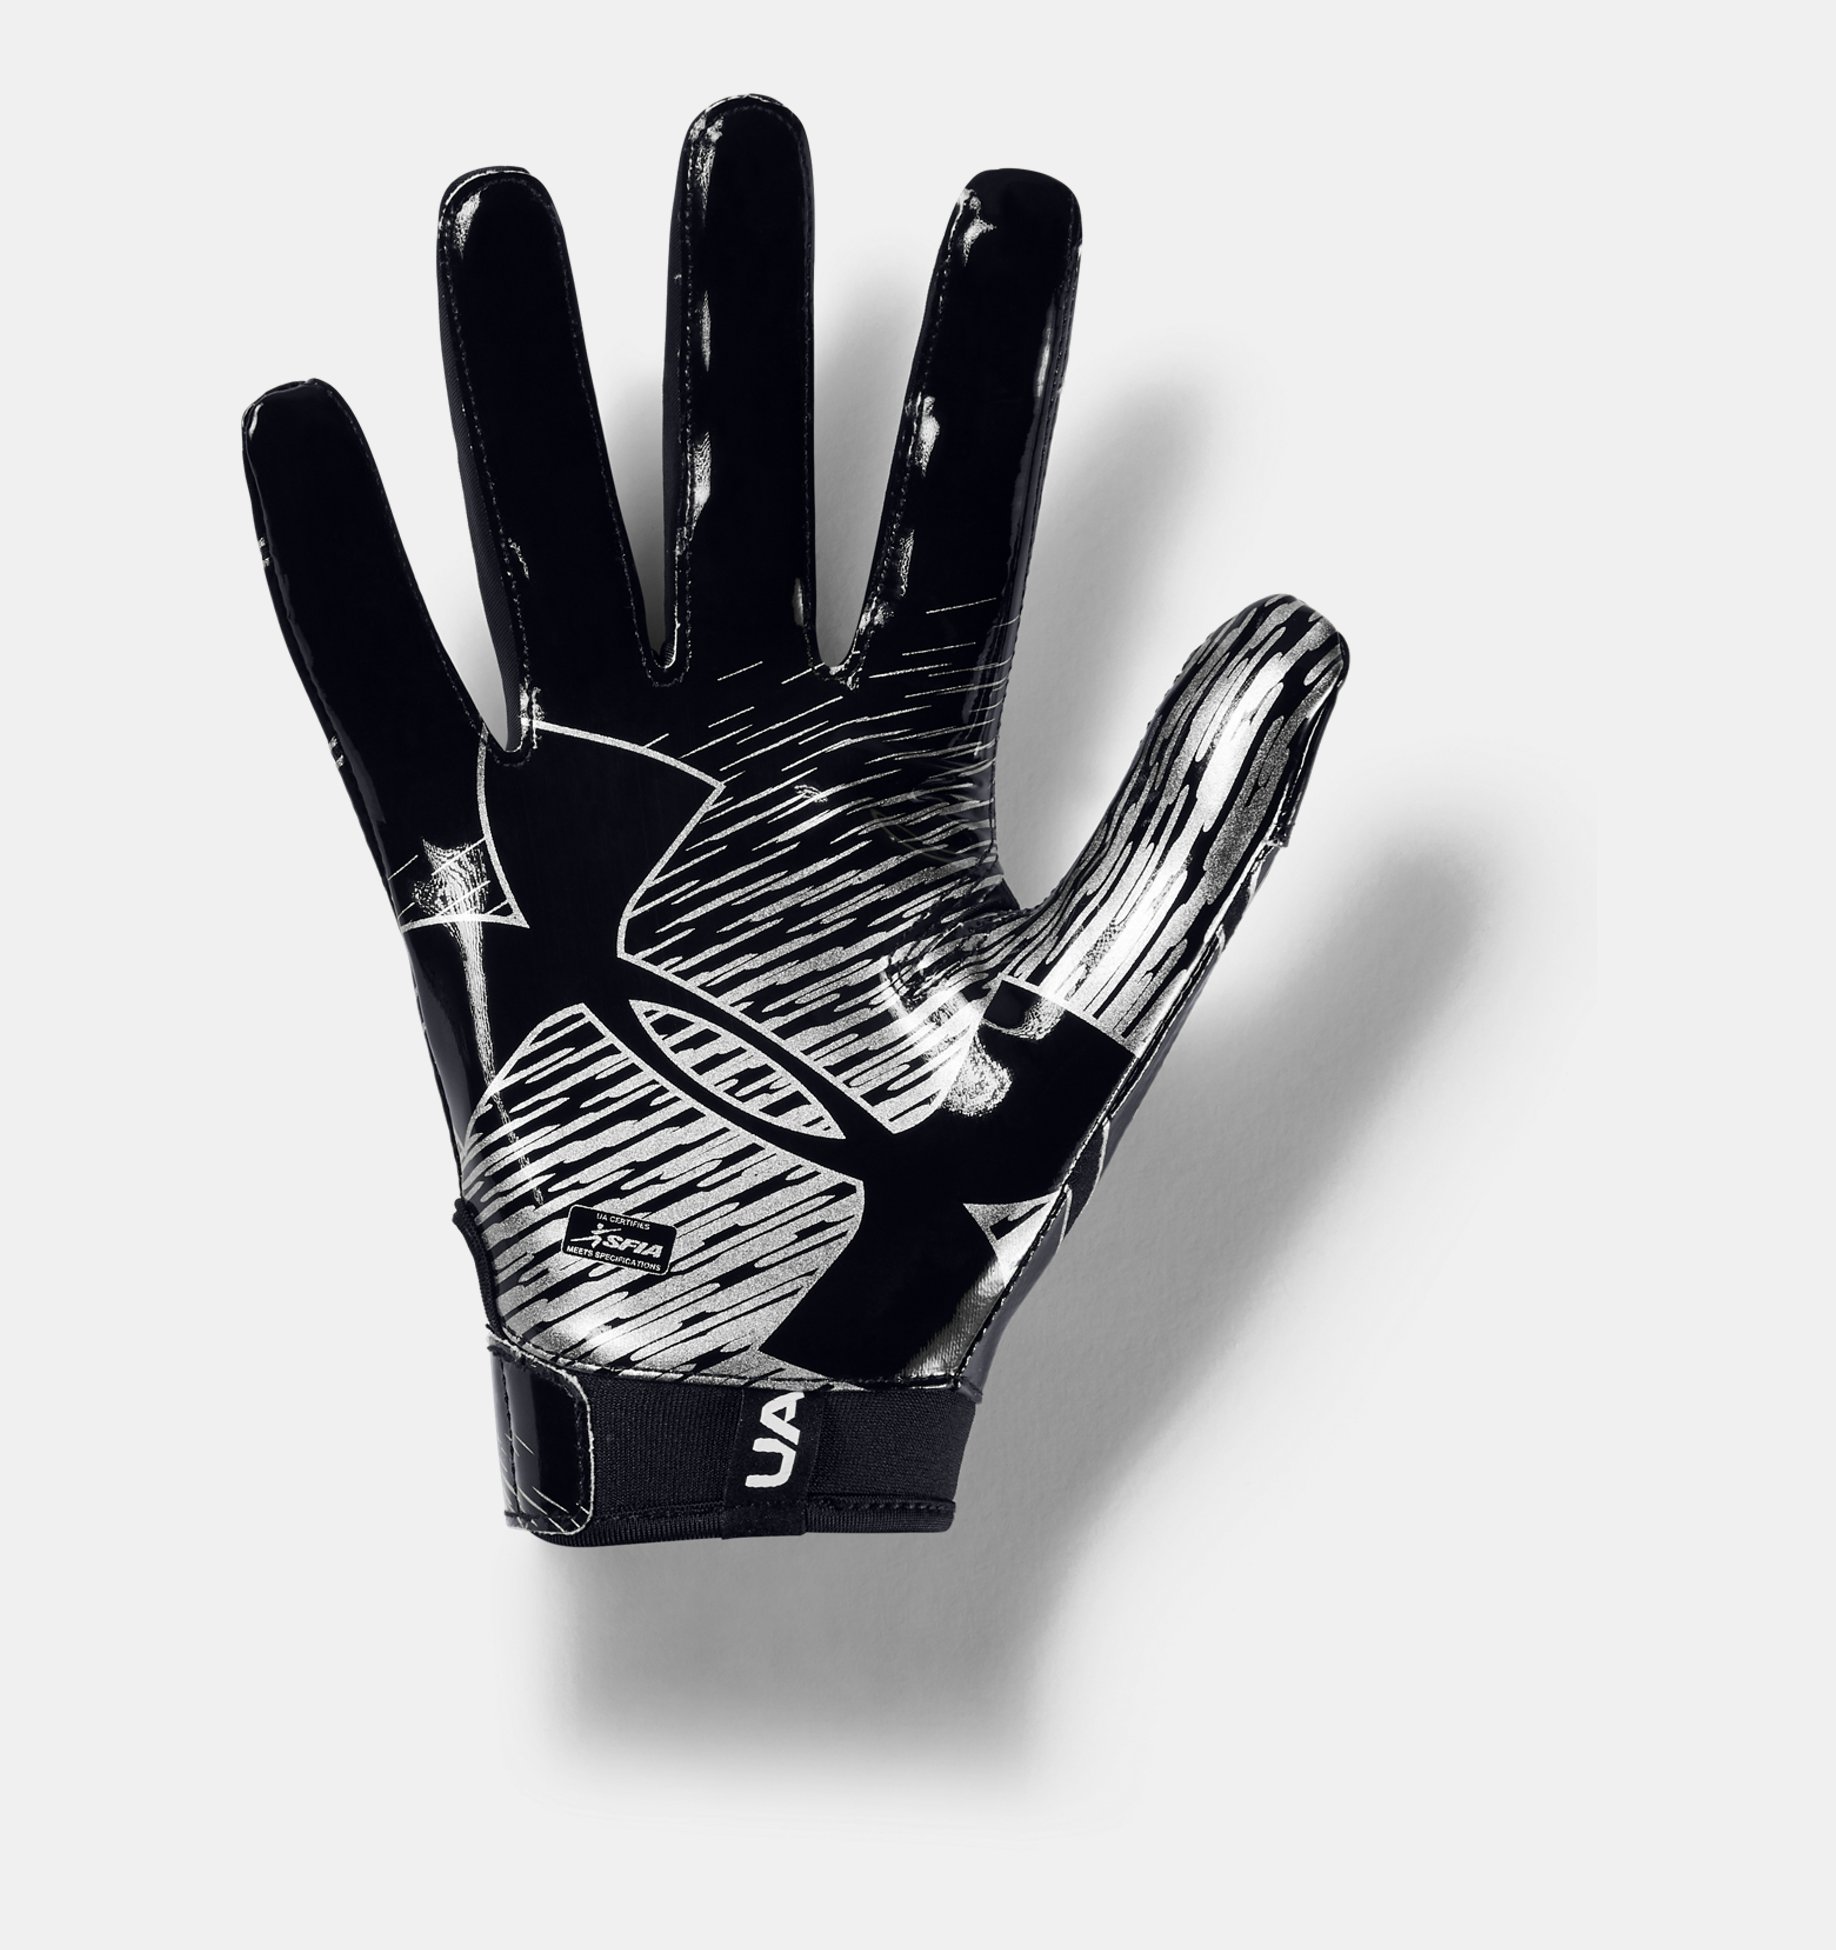 New Under Armour Men's Black/Black/White Spotlight WR Football Gloves 